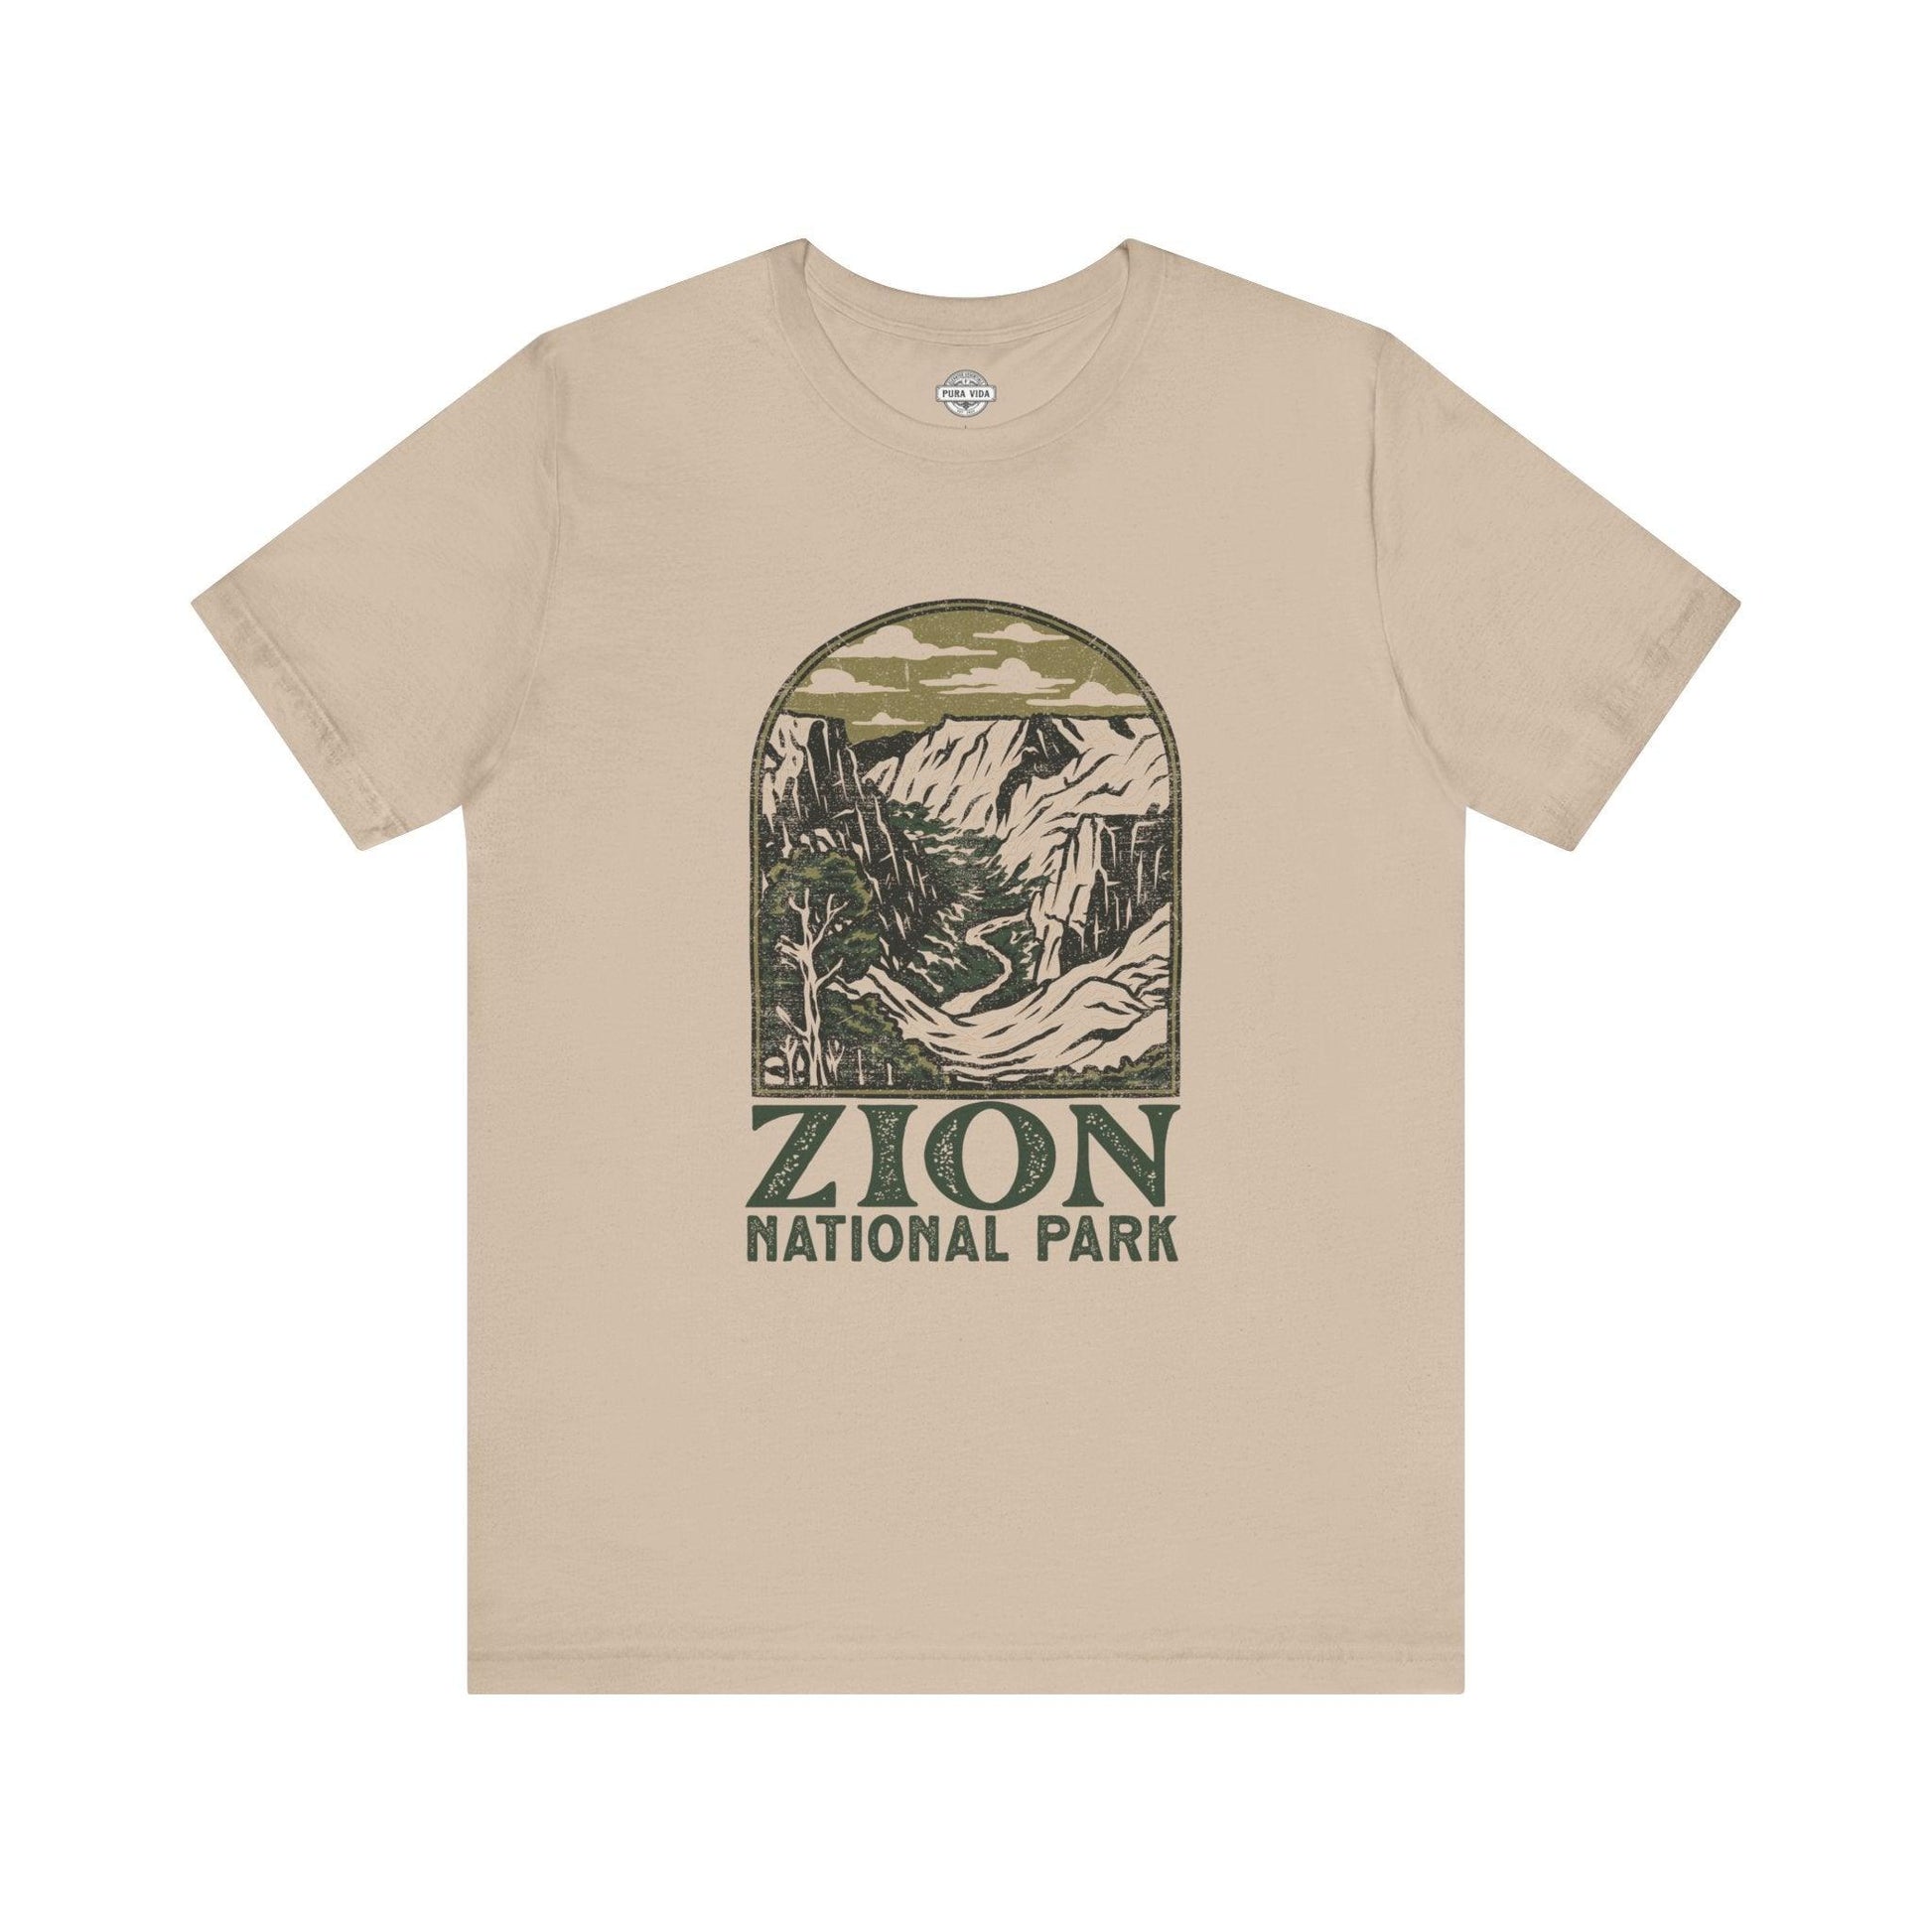 Vintage Zion National Park - T-Shirt - The Pura Vida Co.